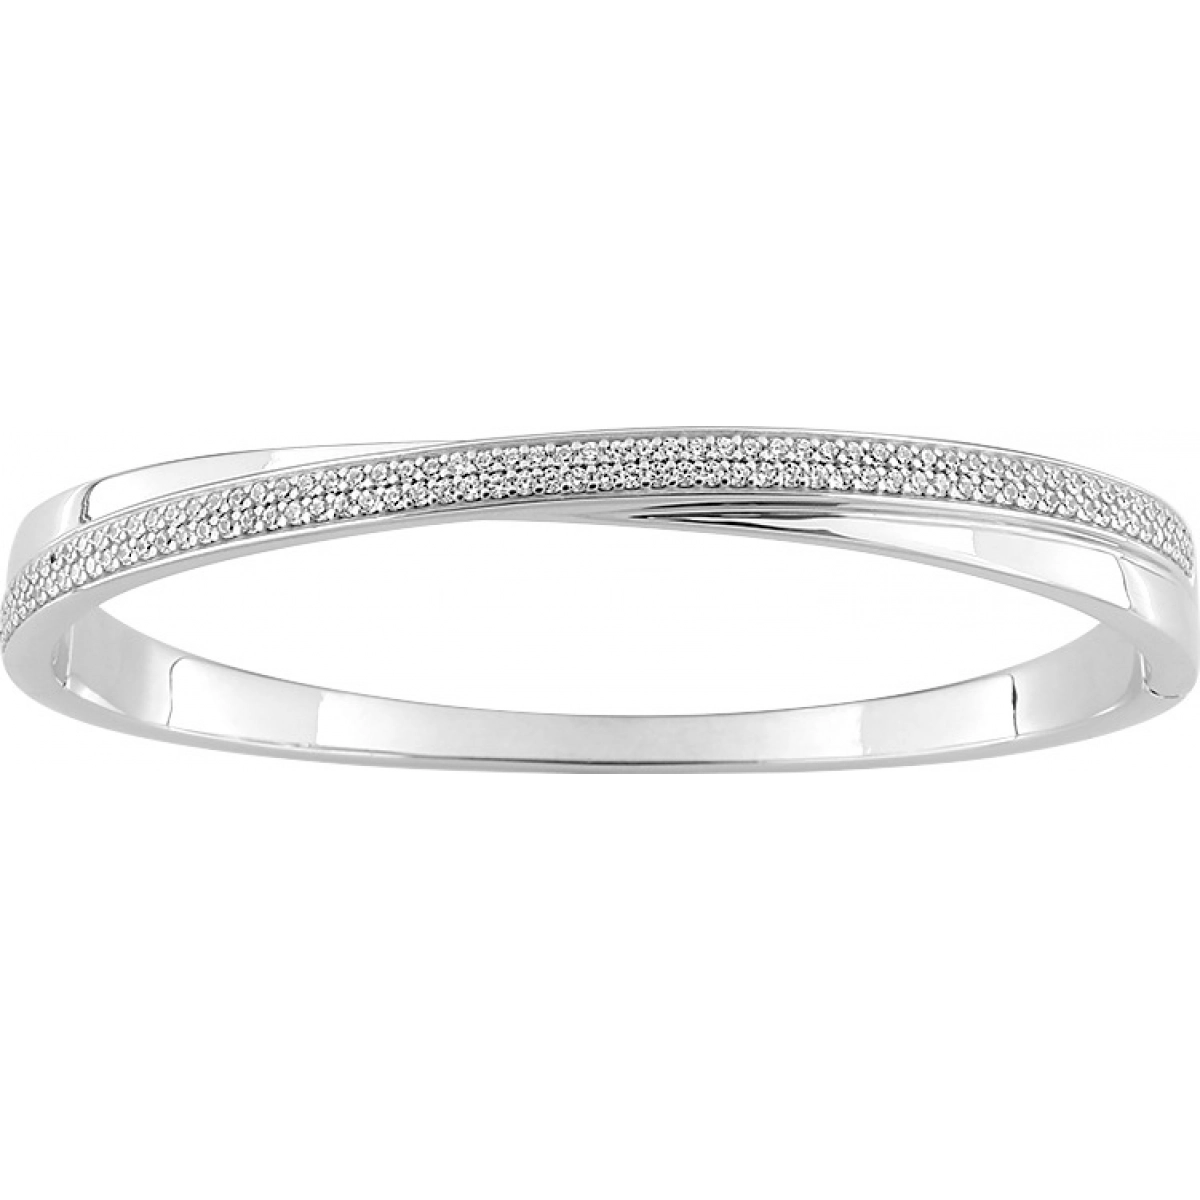 Bracelet w. cz rh925 Silver Lua Blanca  456976.9 